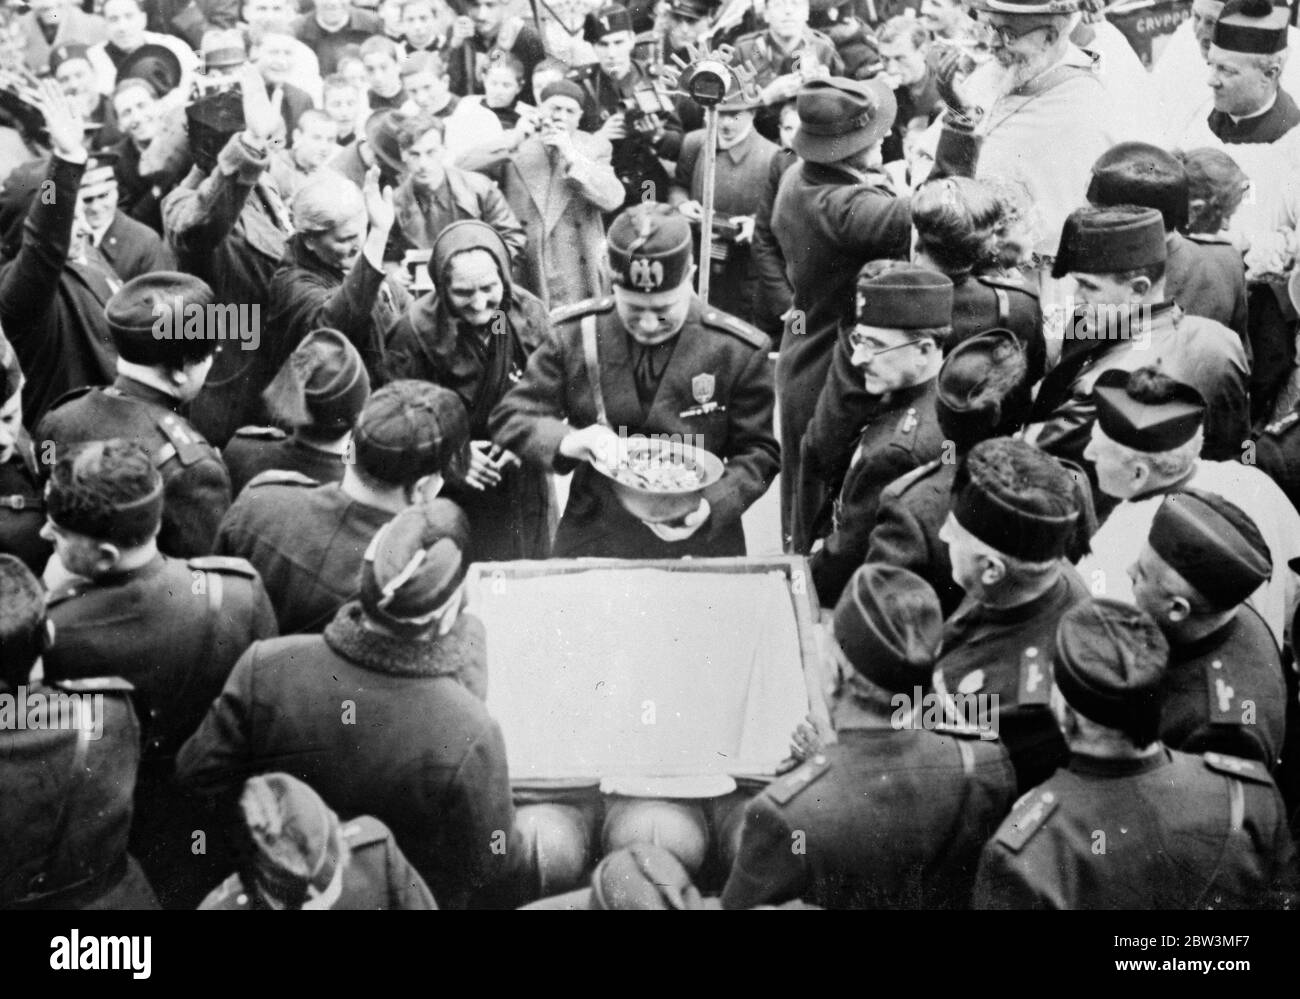 Mussolini sagt, dass der Krieg bis zum Ende geführt wird - Mütter präsentieren Schmuckstücke zu verführen. Signor Mussolini mit dem Helm gefüllt mit Schmuckstücken, die er von den alten Frauen auf der linken Seite erhalten hatte. 20 Dezember 1935 Stockfoto